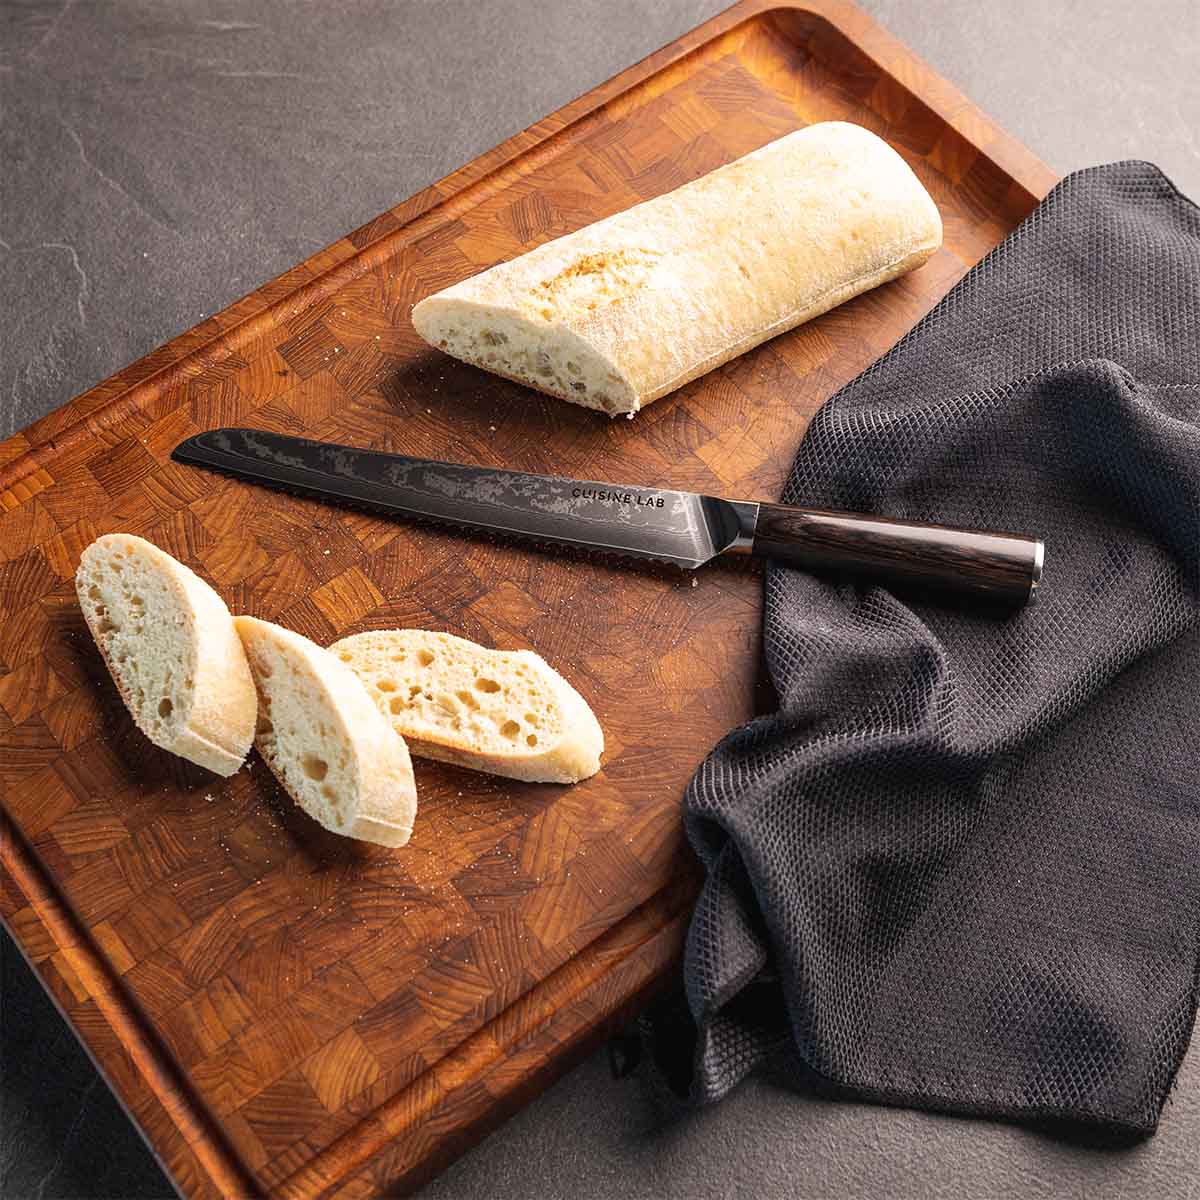 Classic Brødkniv - 230 mm. - Kitchen Knives - cuisinelab